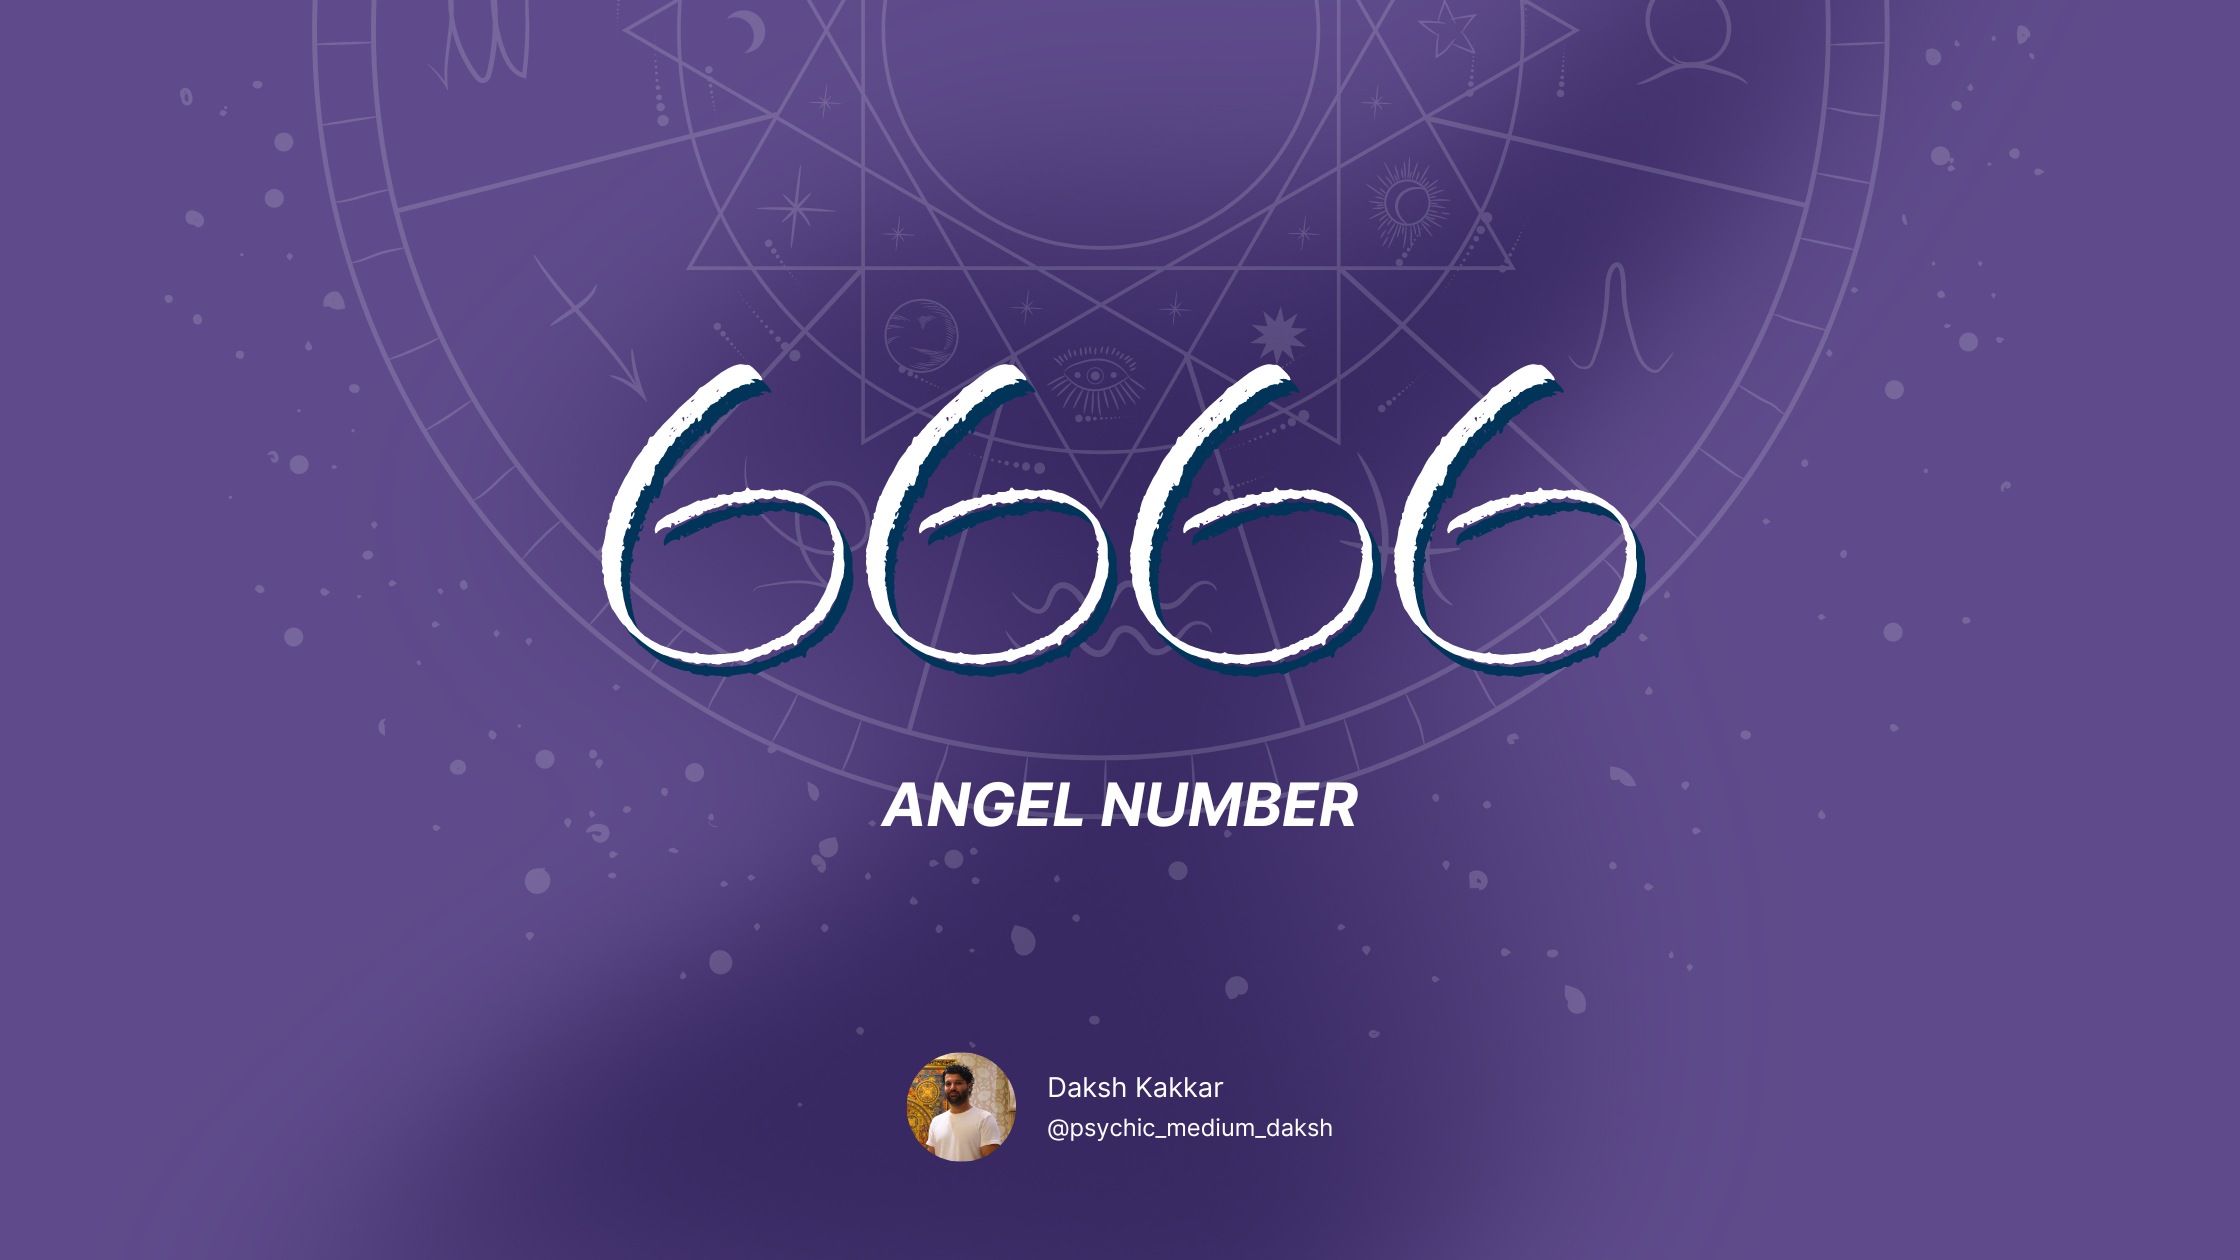 6666 angel number